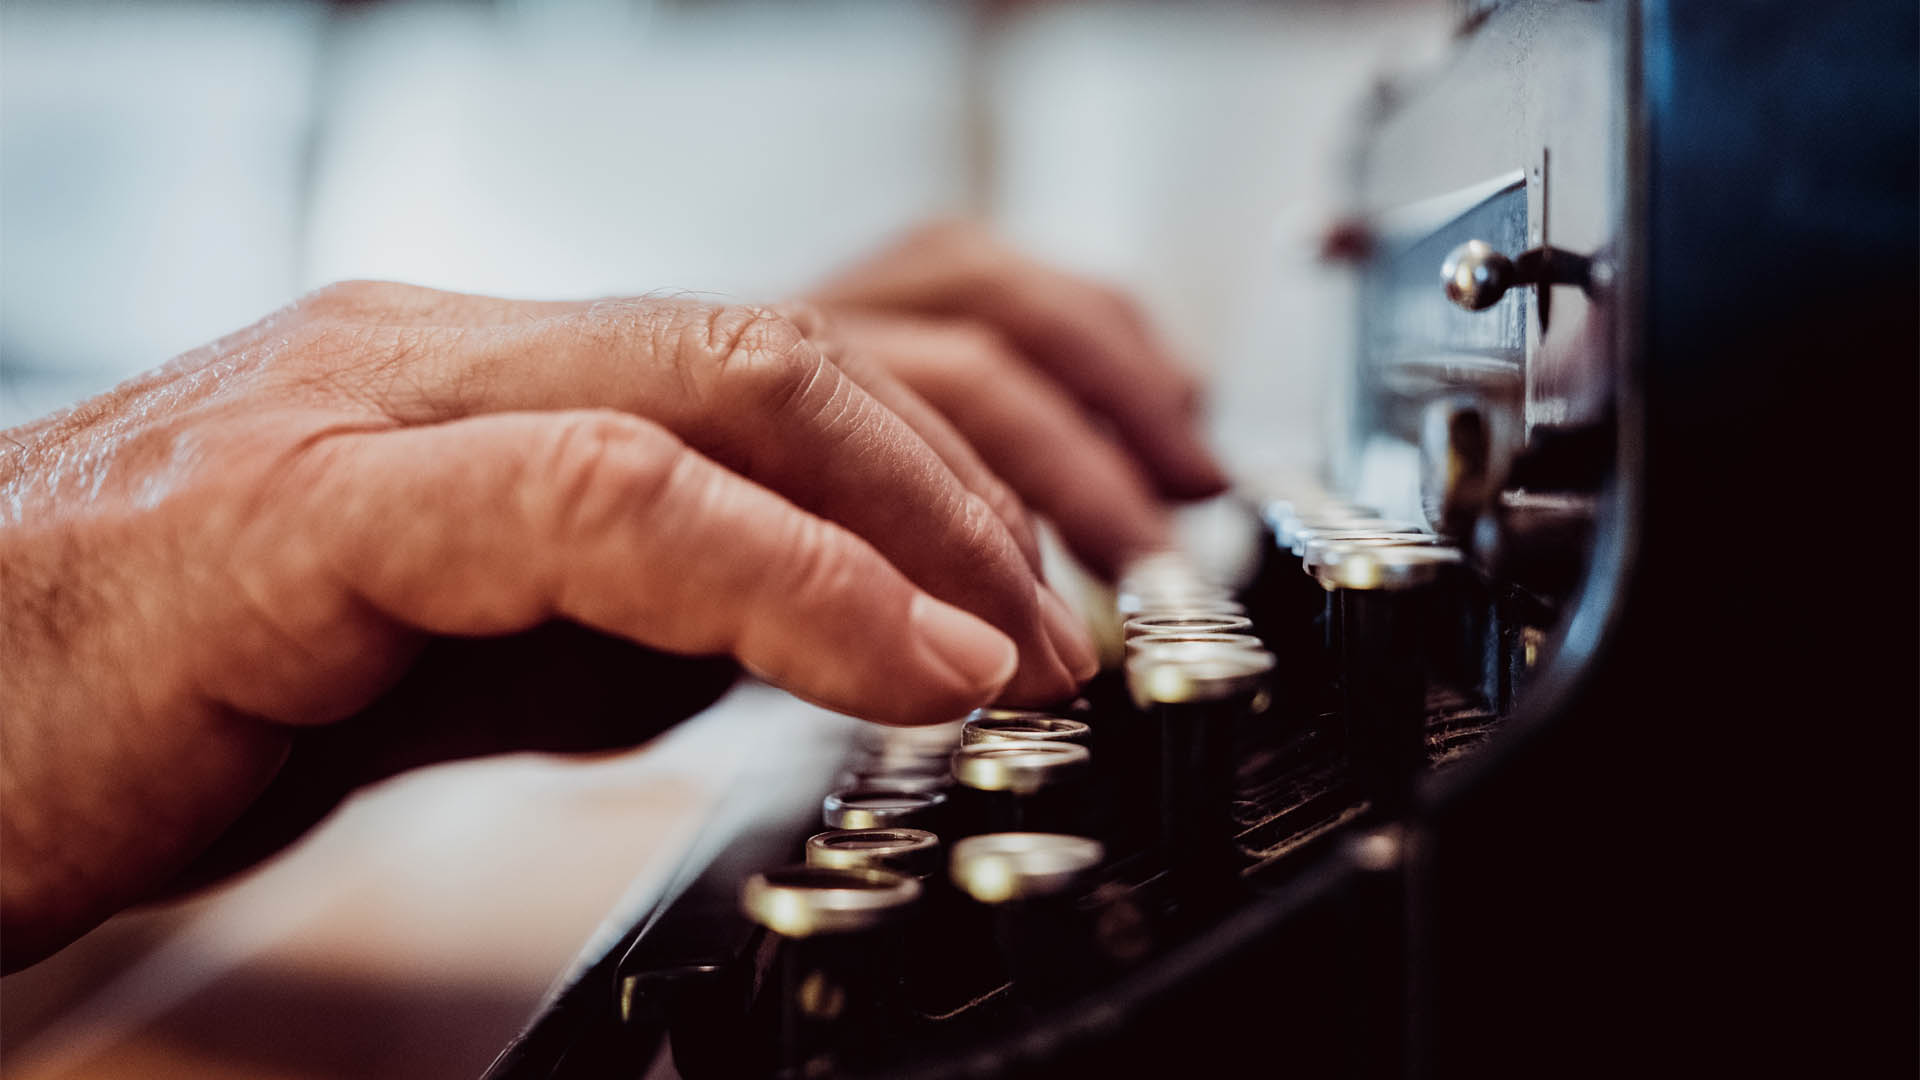 A man typing on a typewriter.